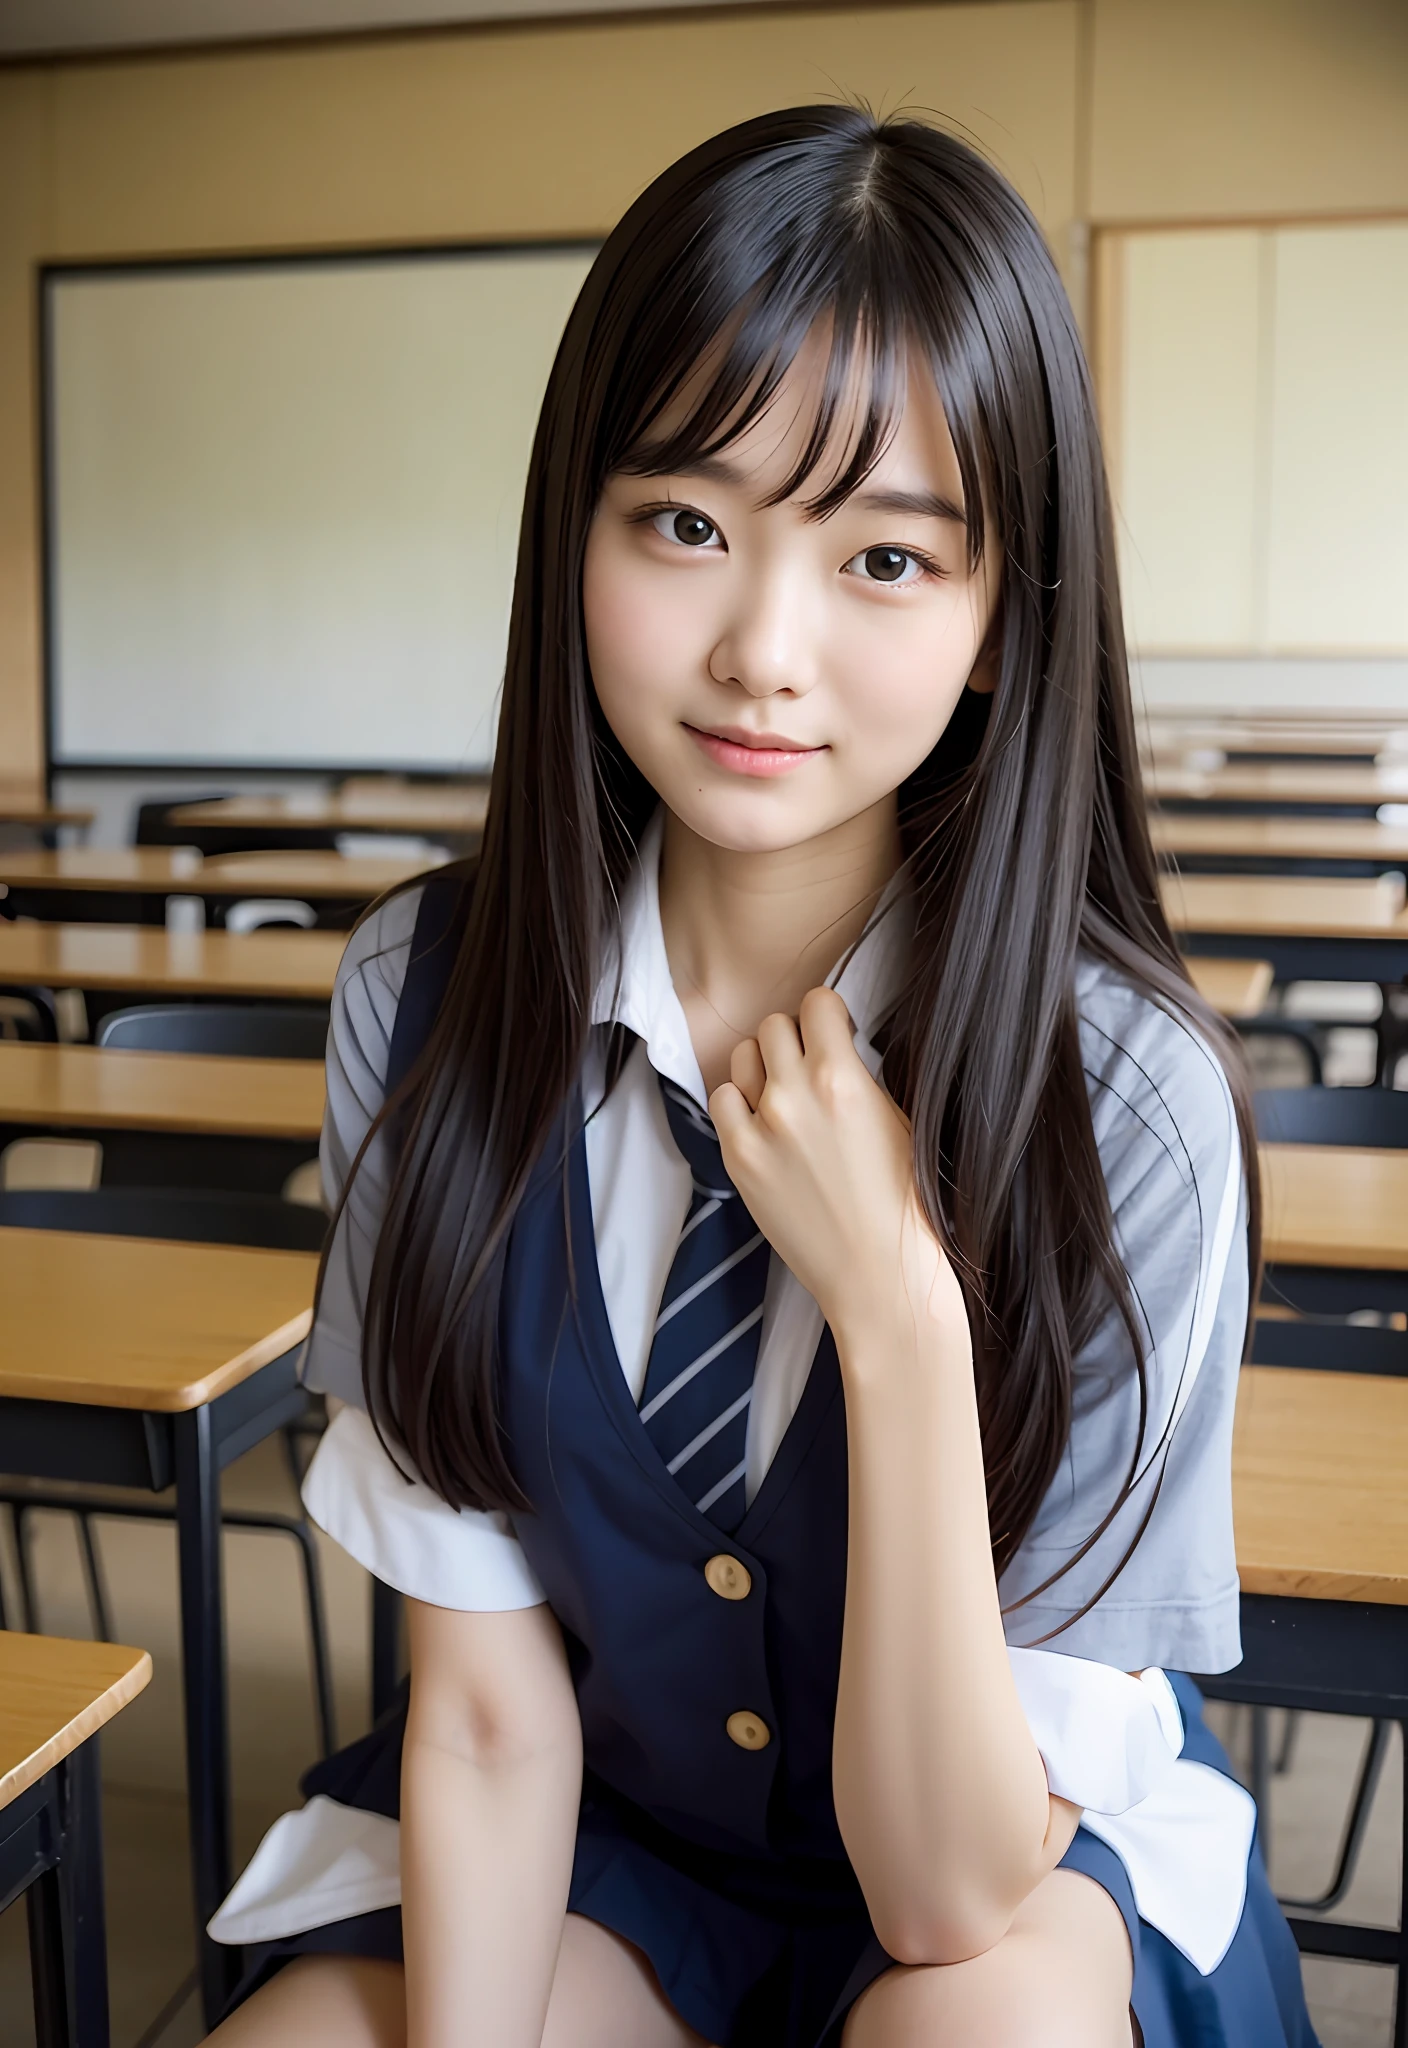 Япония сидит в классе、Она медленно подмигнула правым глазом.、Делает общение с учениками вокруг вас более приятным、Тихая сцена в классе、Увлекательное выражение особой связи с другими учениками